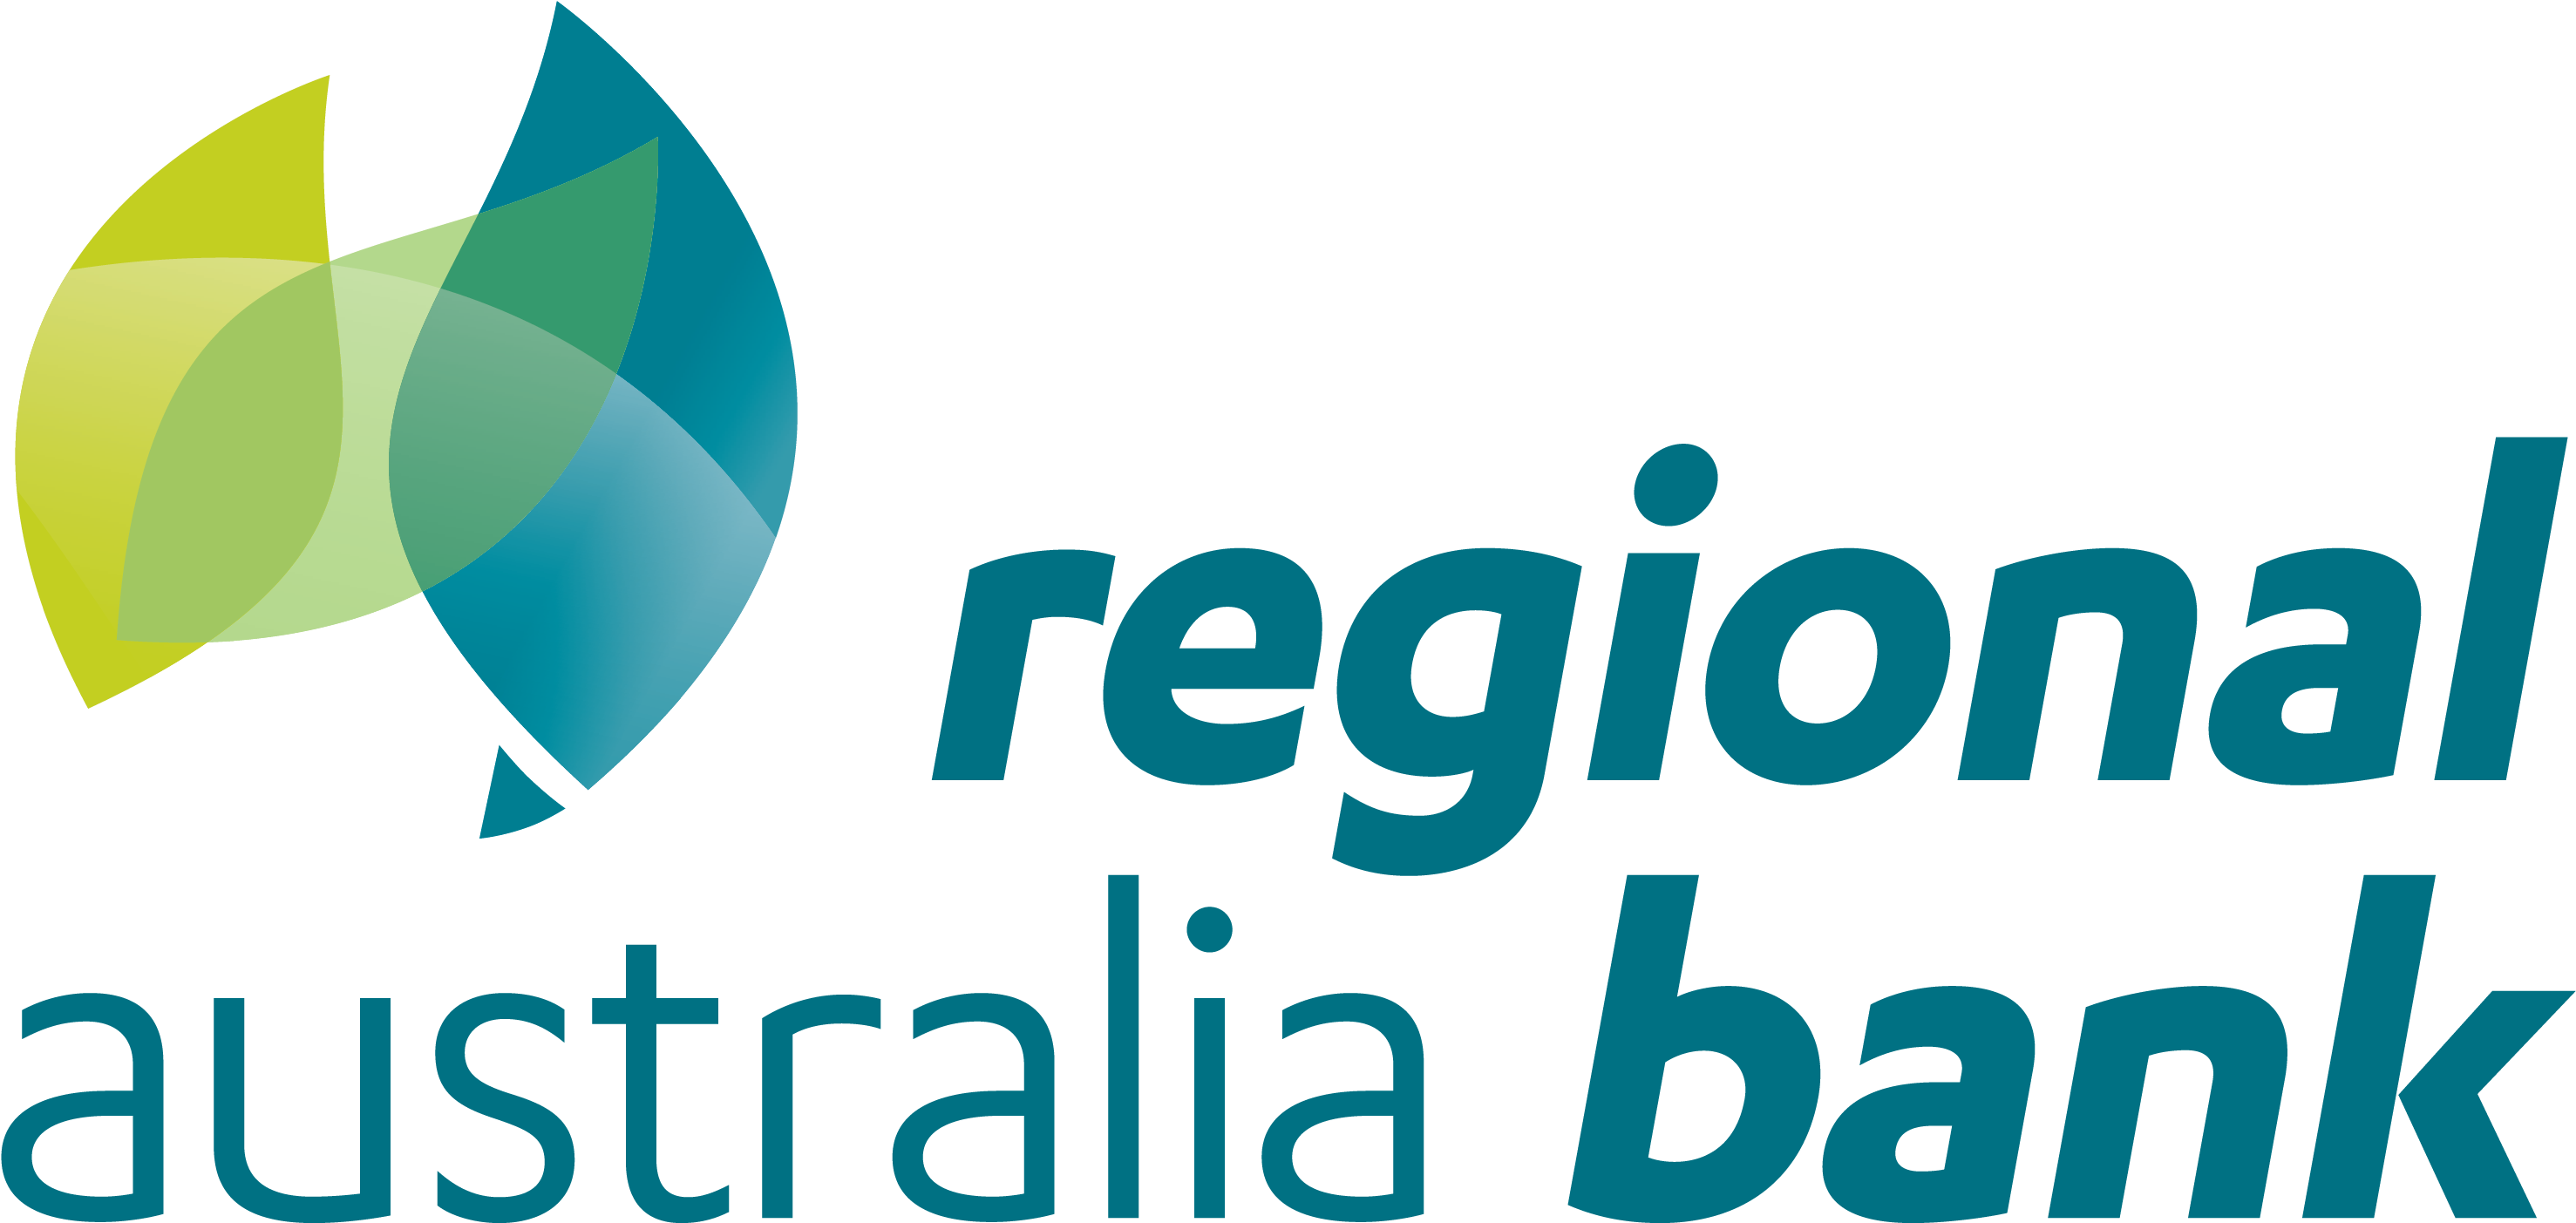 Regional Australia Bank - Regional Australia Bank Logo (3483x2054), Png Download